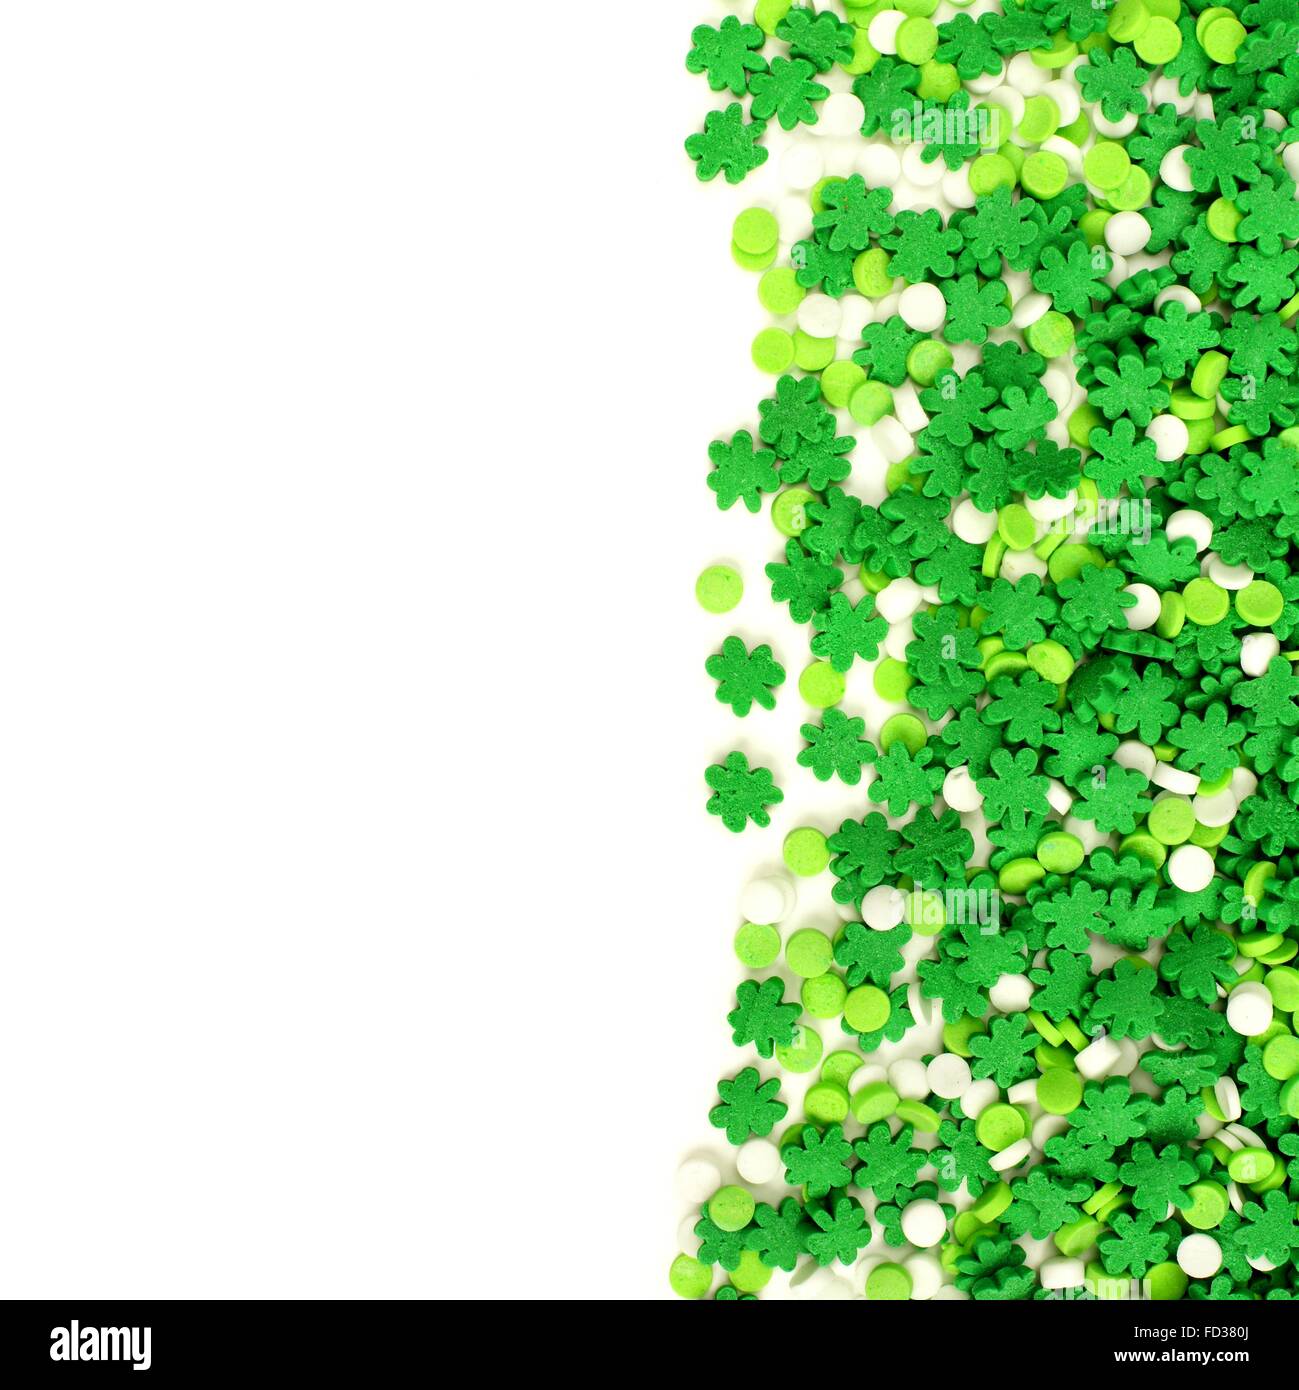 St. Patricks Day Rand des grünen Kleeblatt Süßigkeiten Streusel über weiß Stockfoto